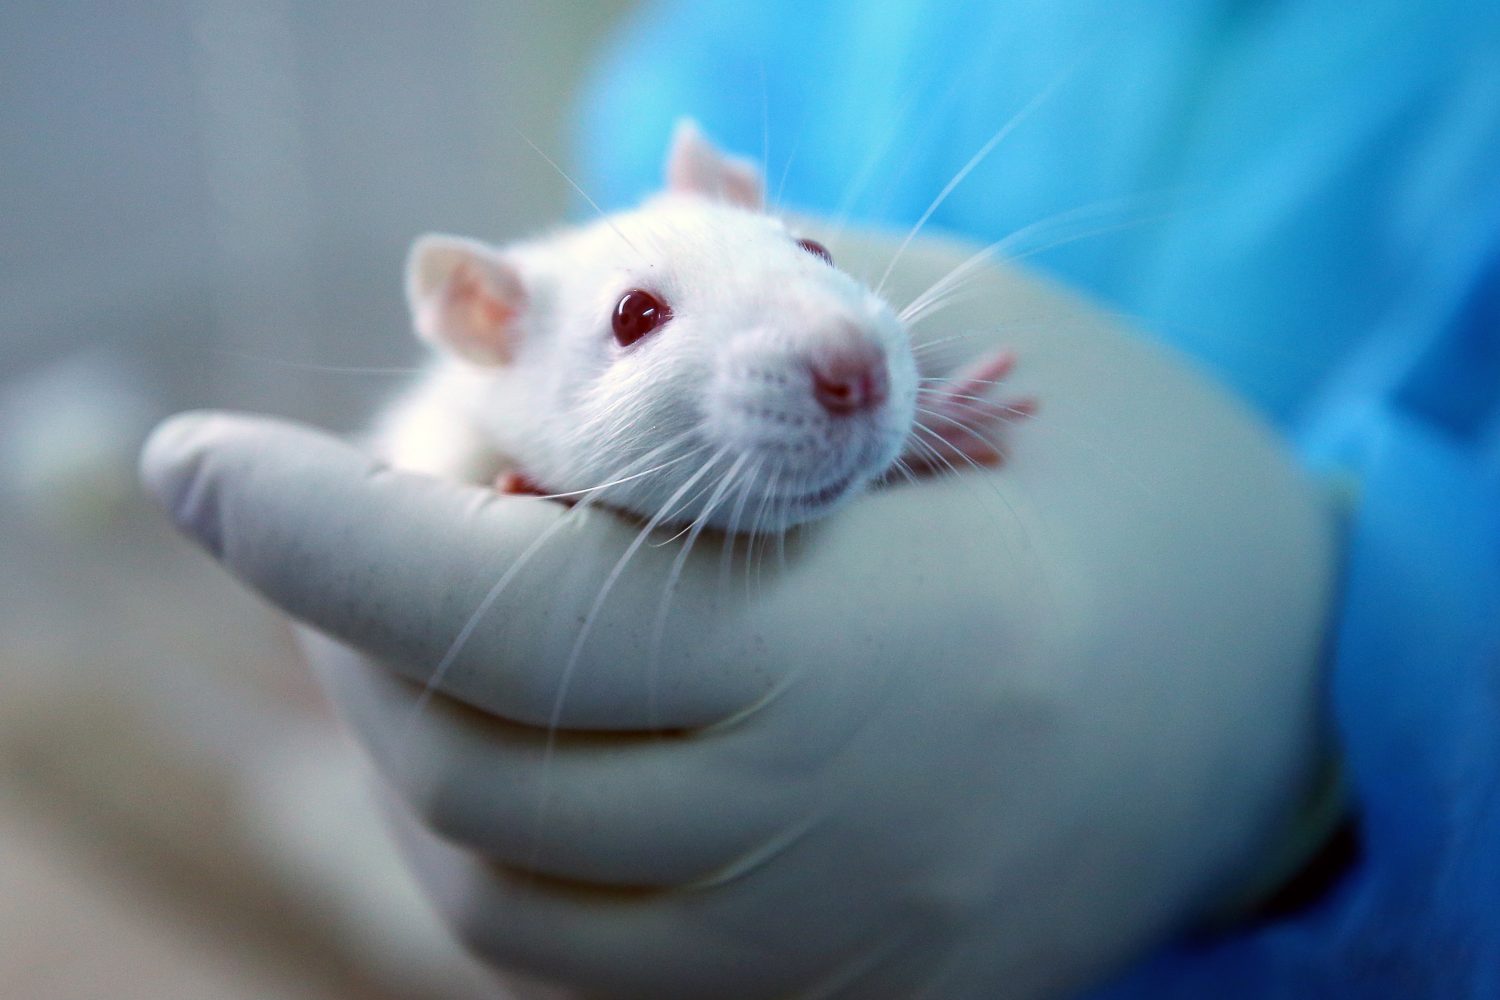 Nuevo caso de hepatitis transmitida por ratas a humanos